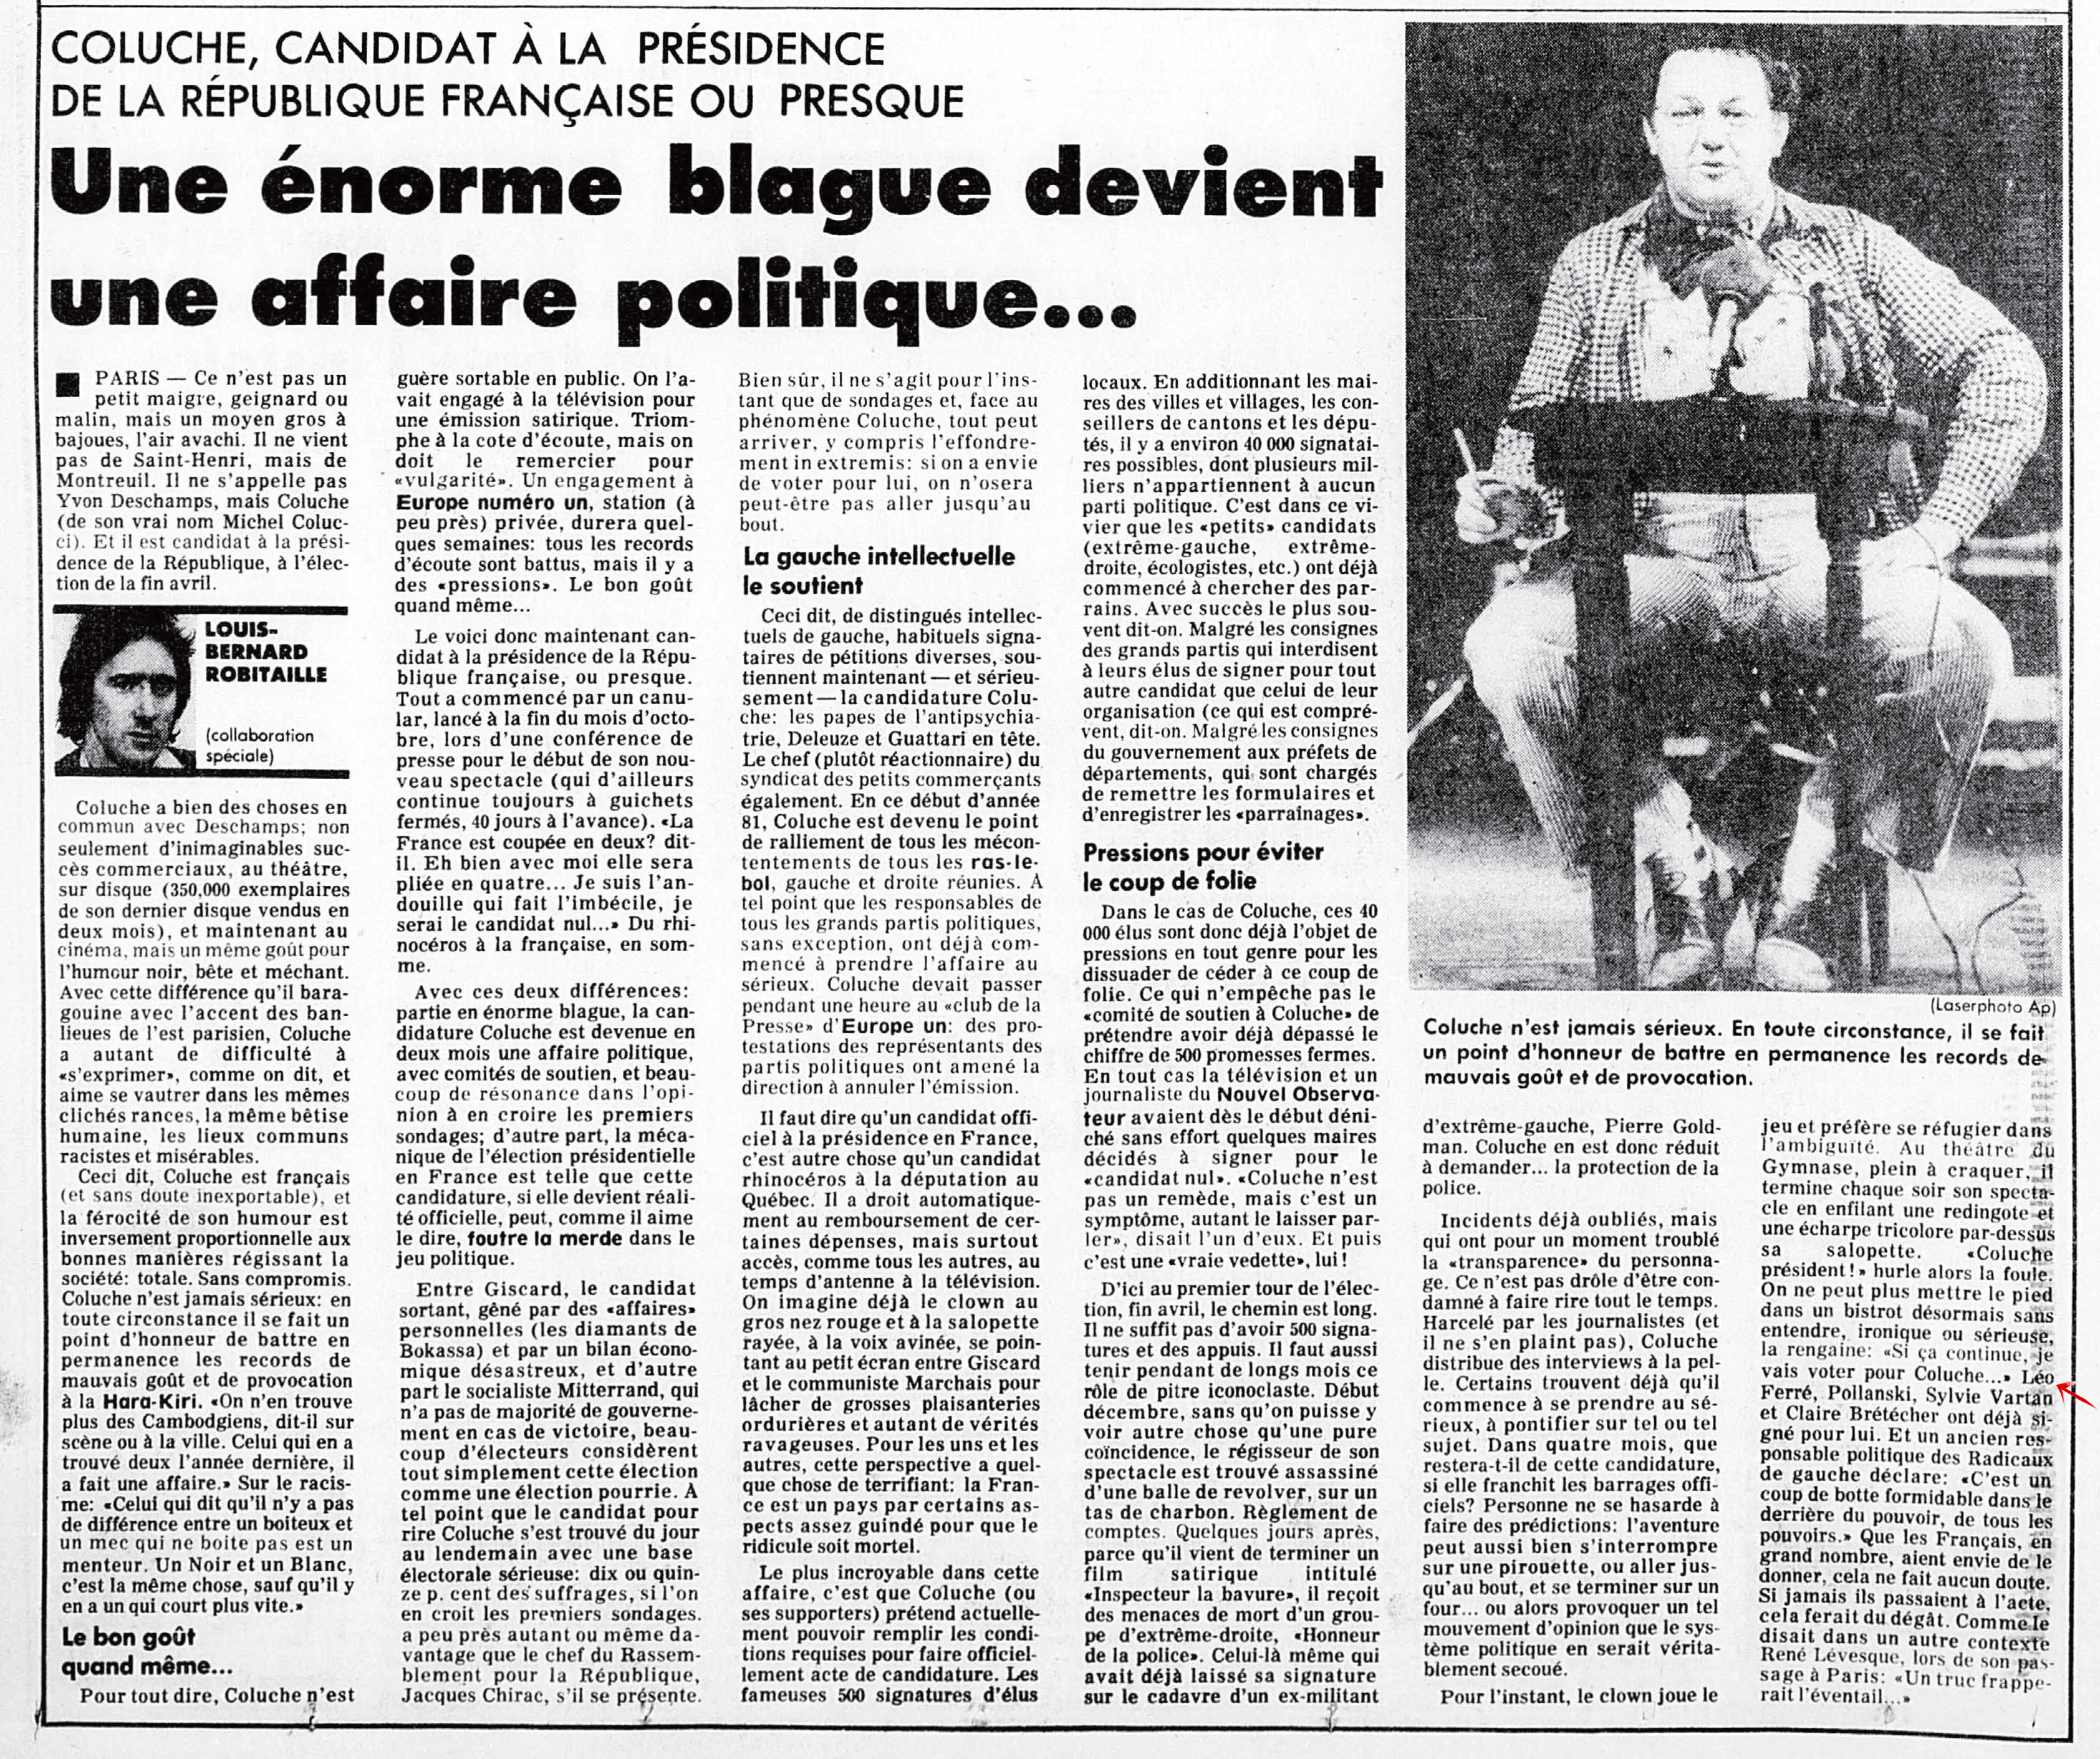 Léo Ferré - La Presse, 19 janvier 1981, Cahier A